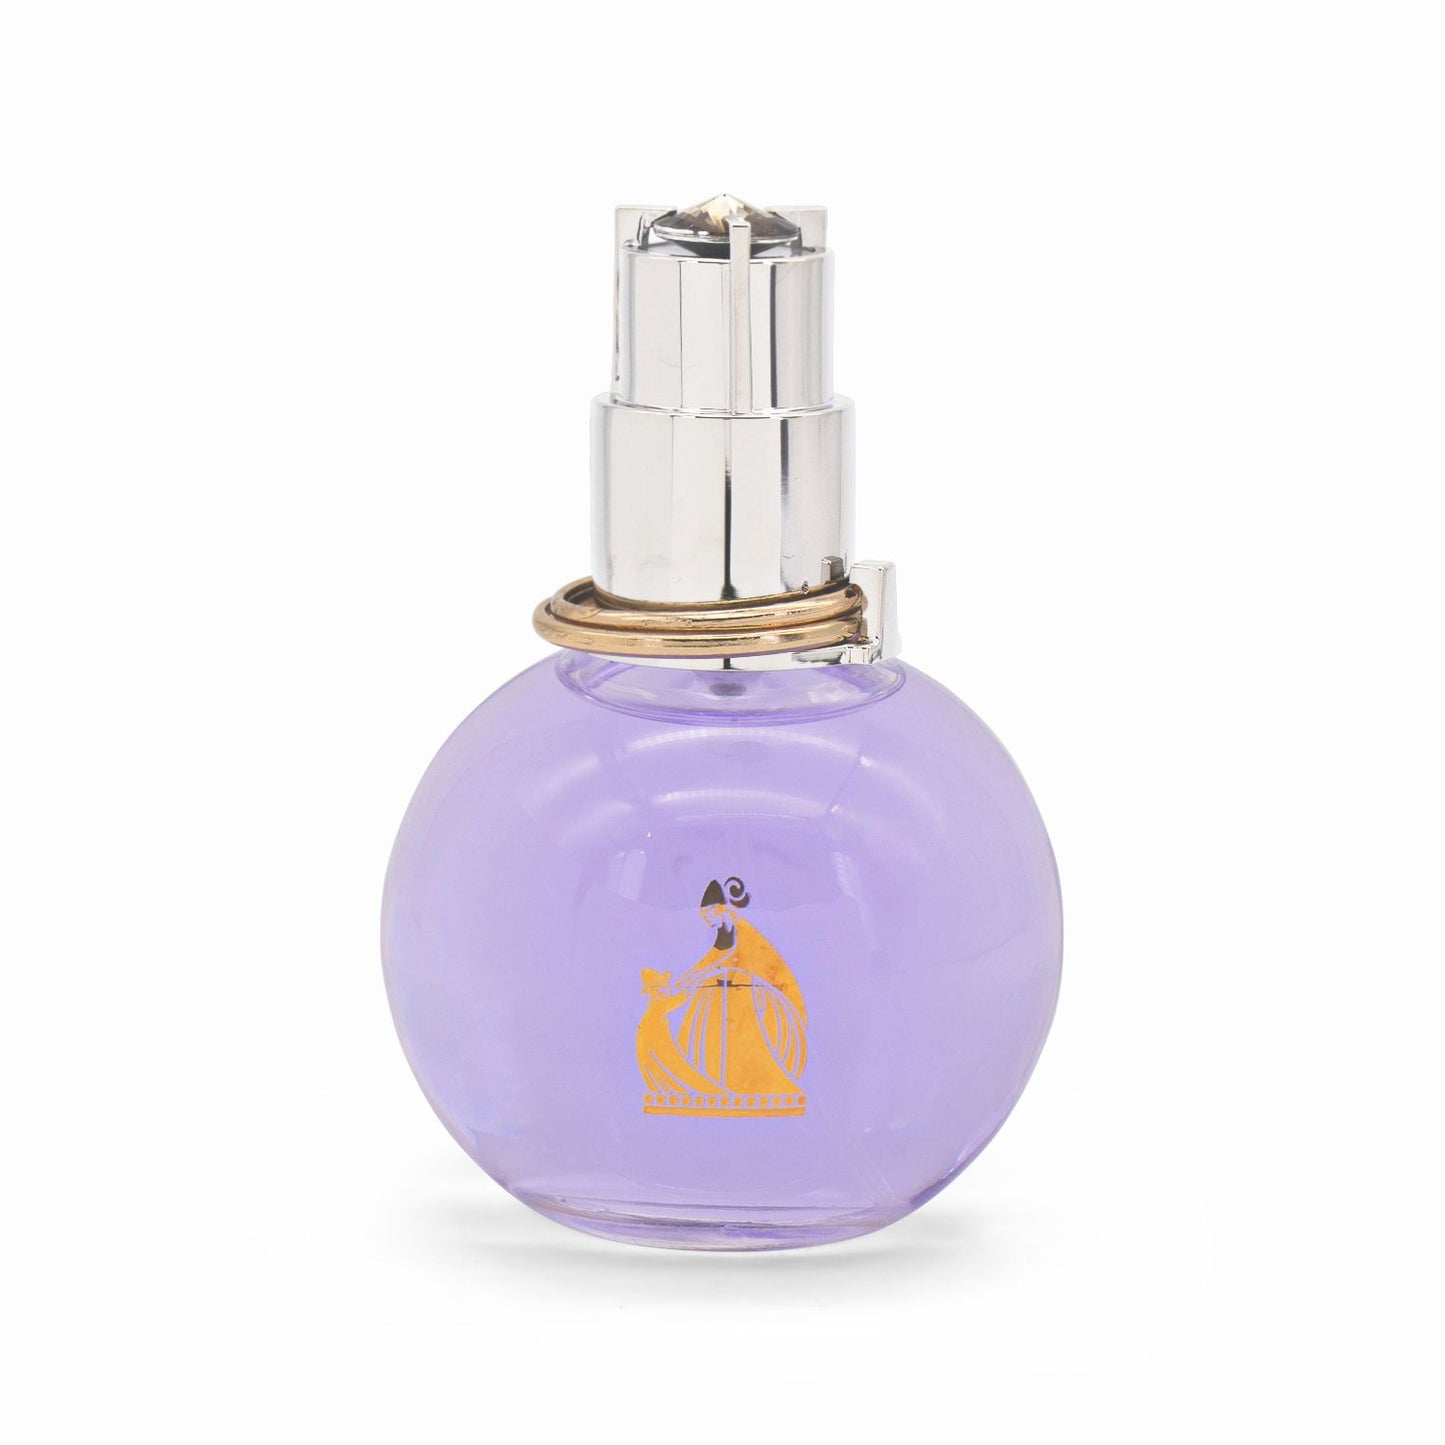 Lanvin Eclat d'Arpege Eau de Parfum Spray 50ml - Imperfect Box